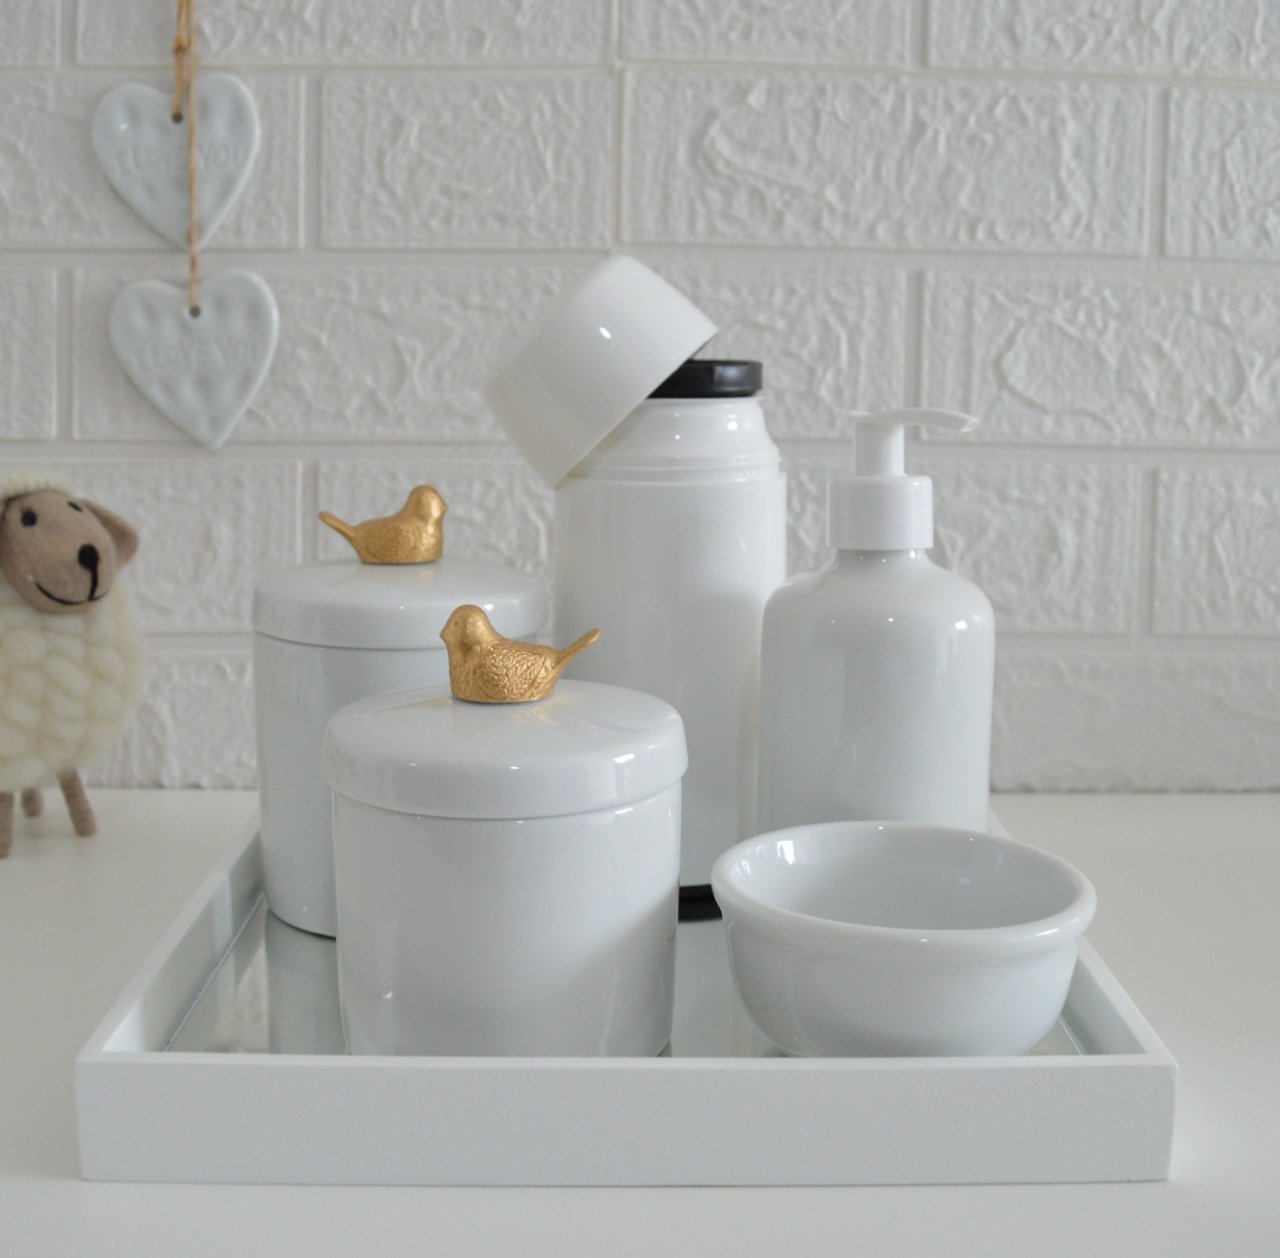 Kit Higiene Potes Porcelana + Bandeja Espelhada + Termica 250ml Apliques em Resina Pássaro Dourado.